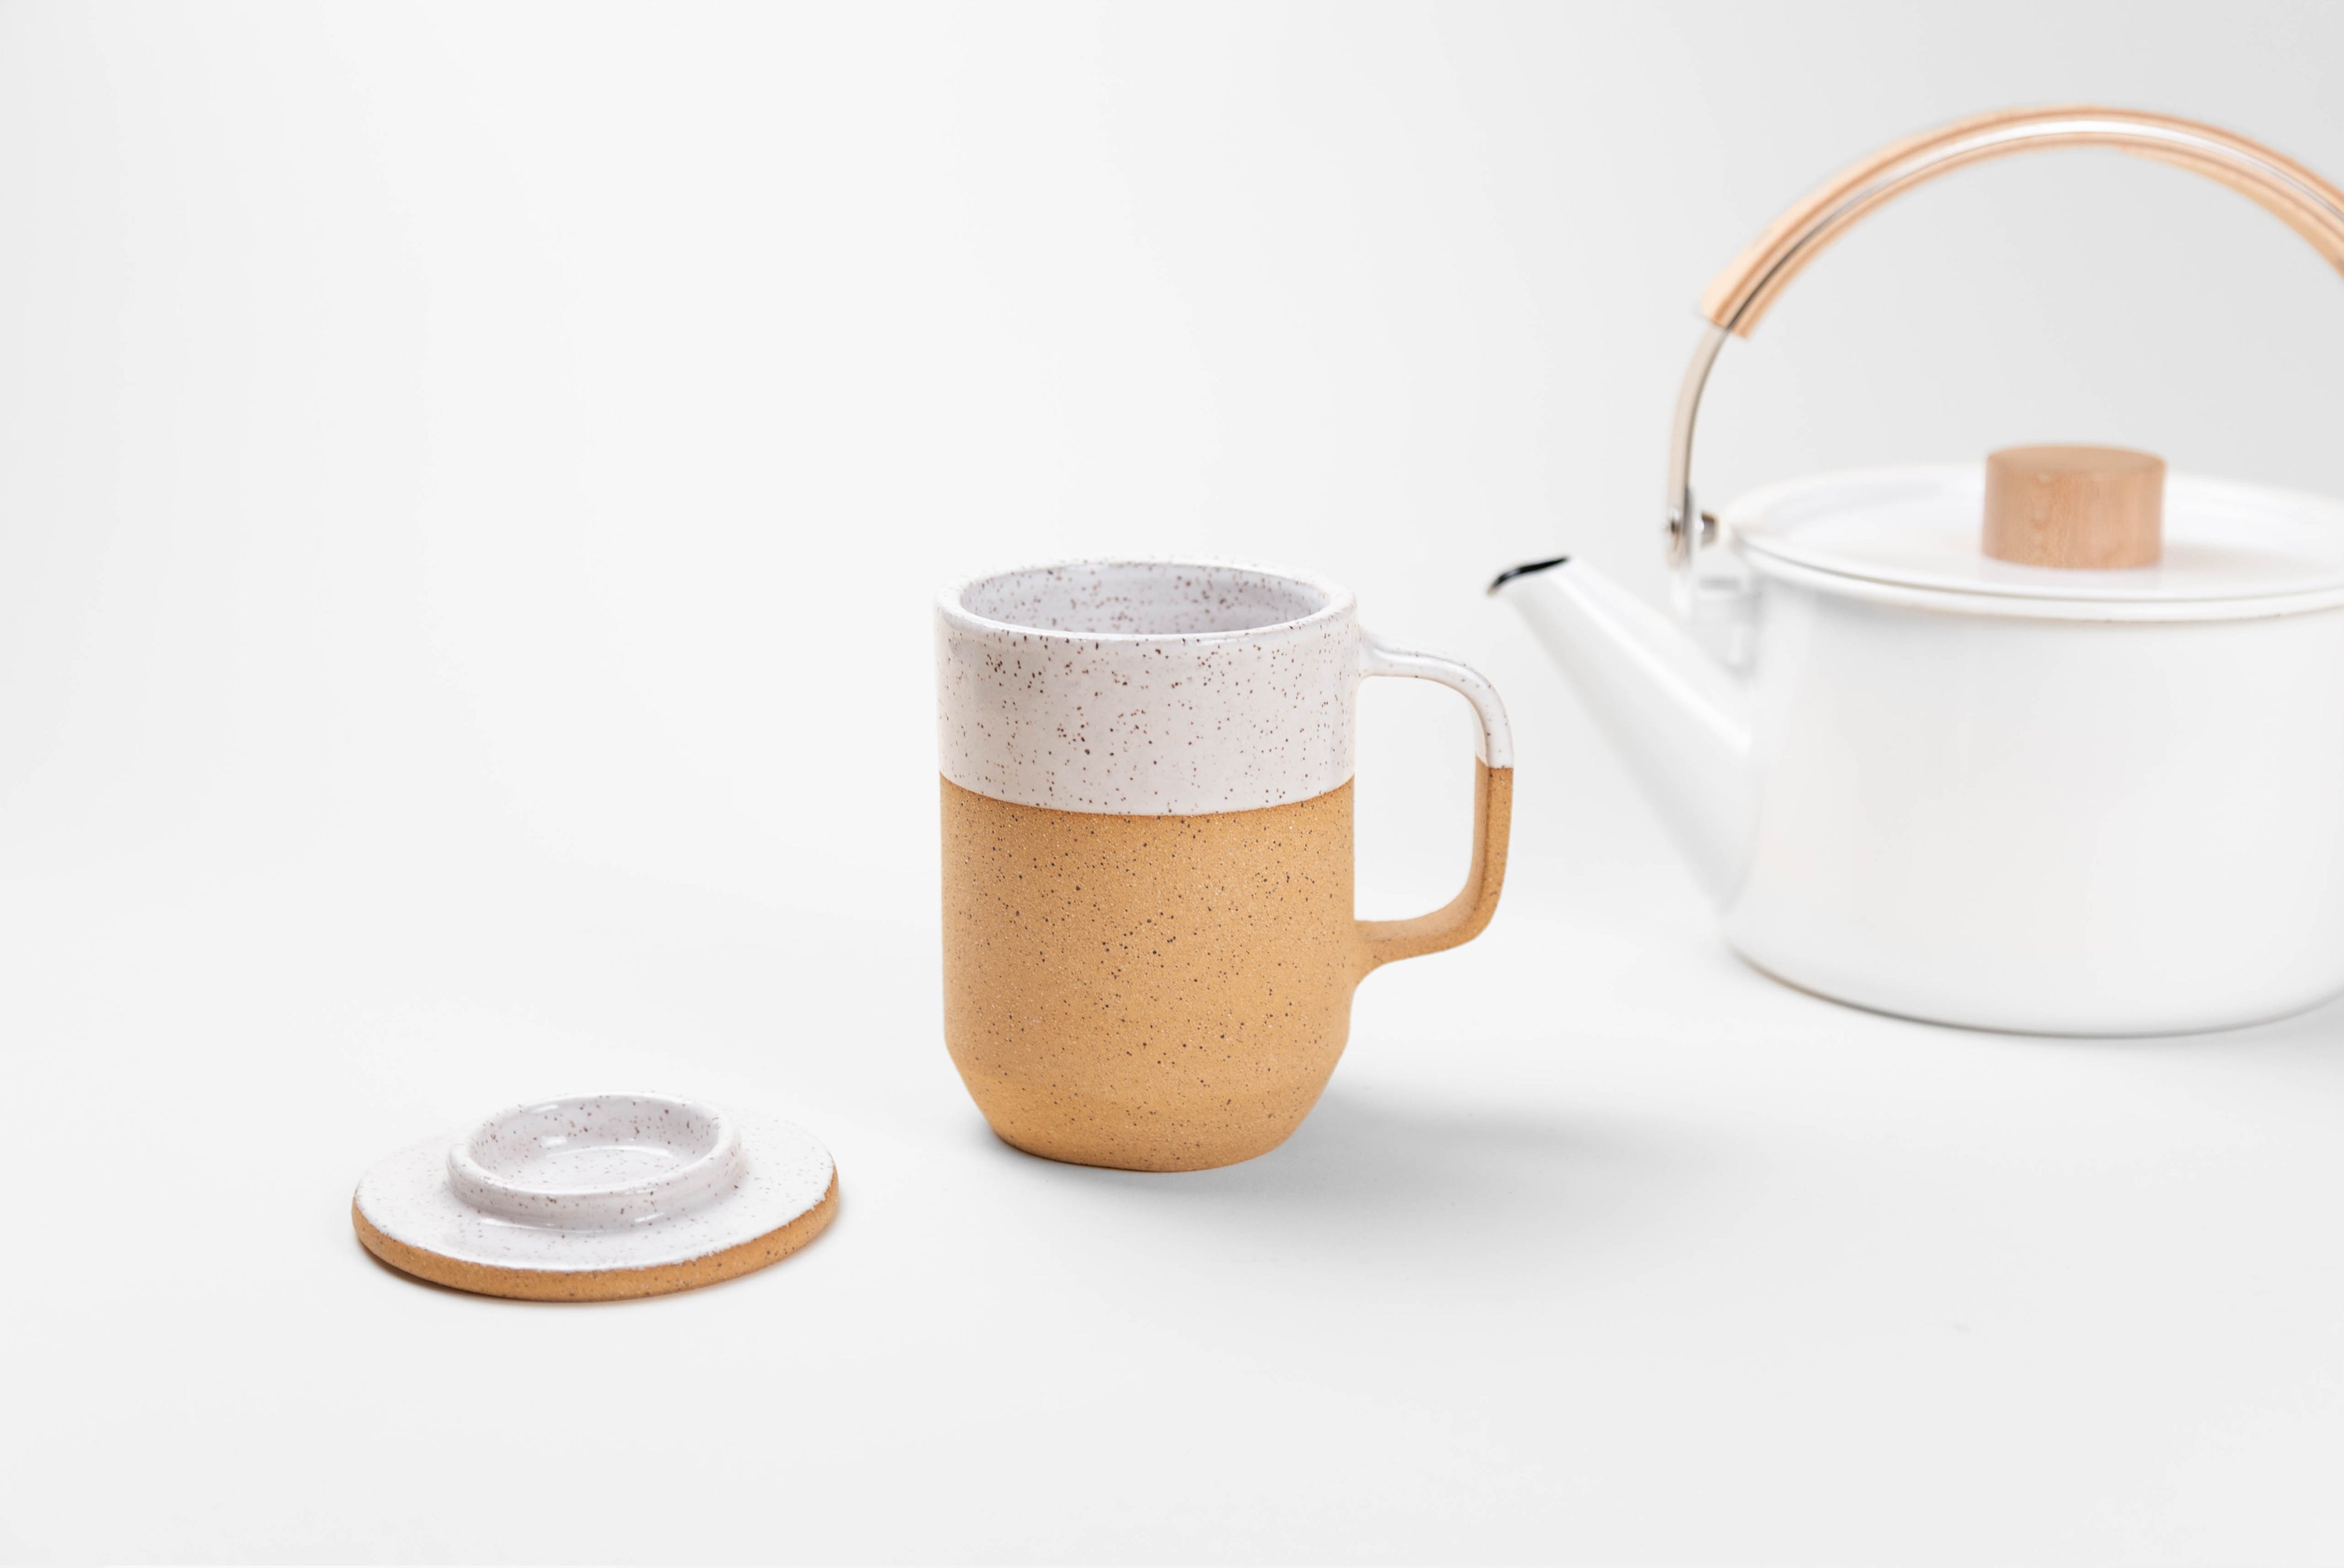 Ceramic Tea + Coffee Mug with Lid